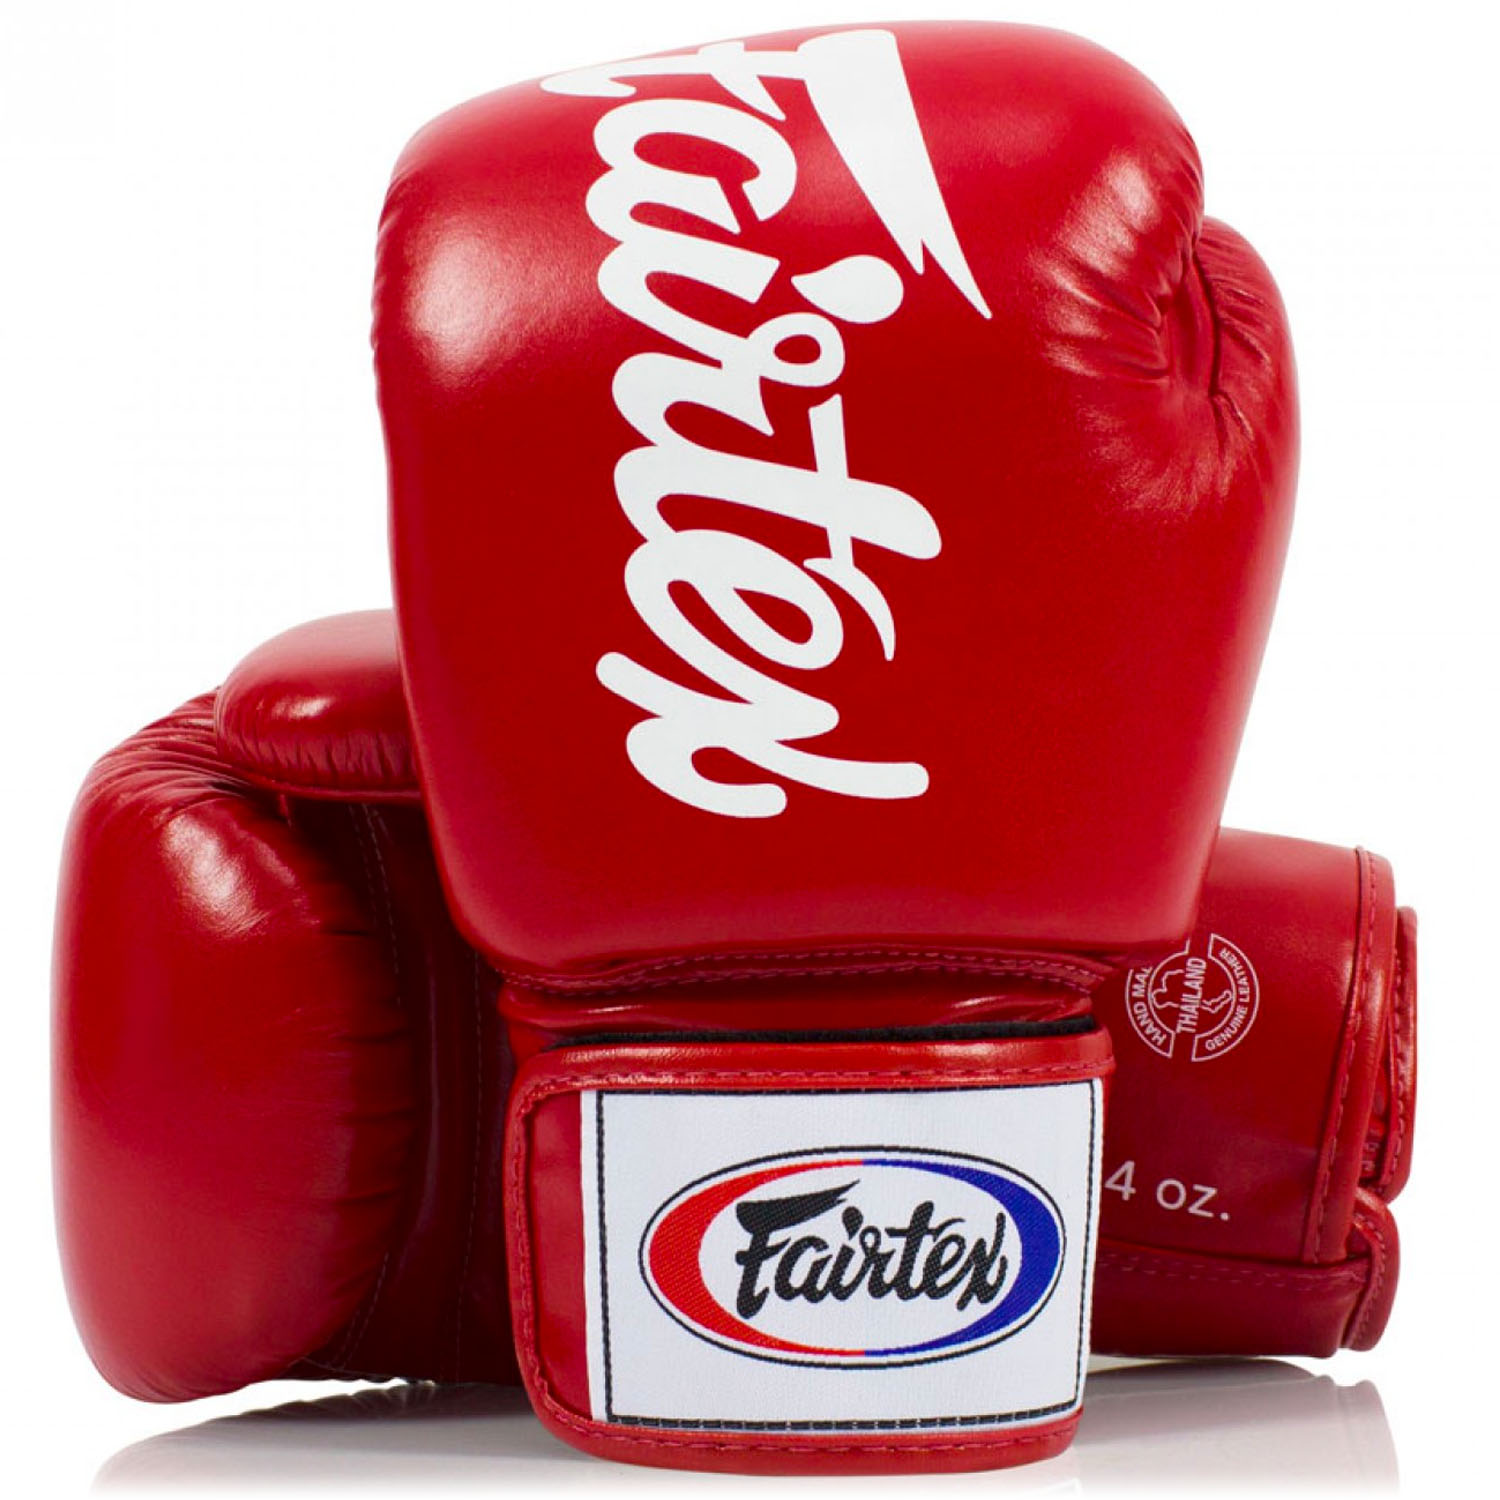 Fairtex Boxing Gloves, BGV19, red-white